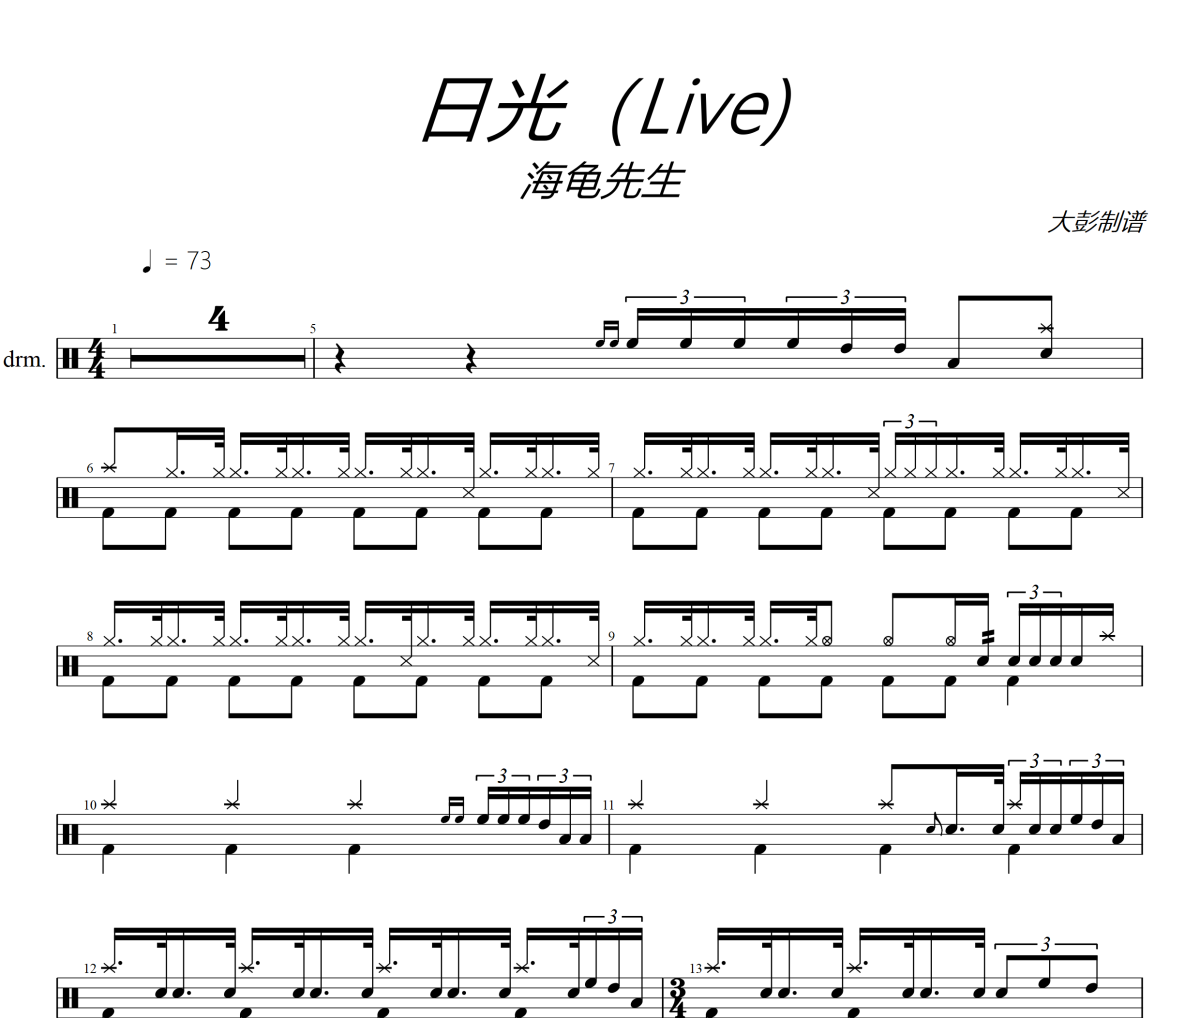 日光鼓谱 海龟先生-日光(Live)架子鼓|爵士鼓|鼓谱+动态视频